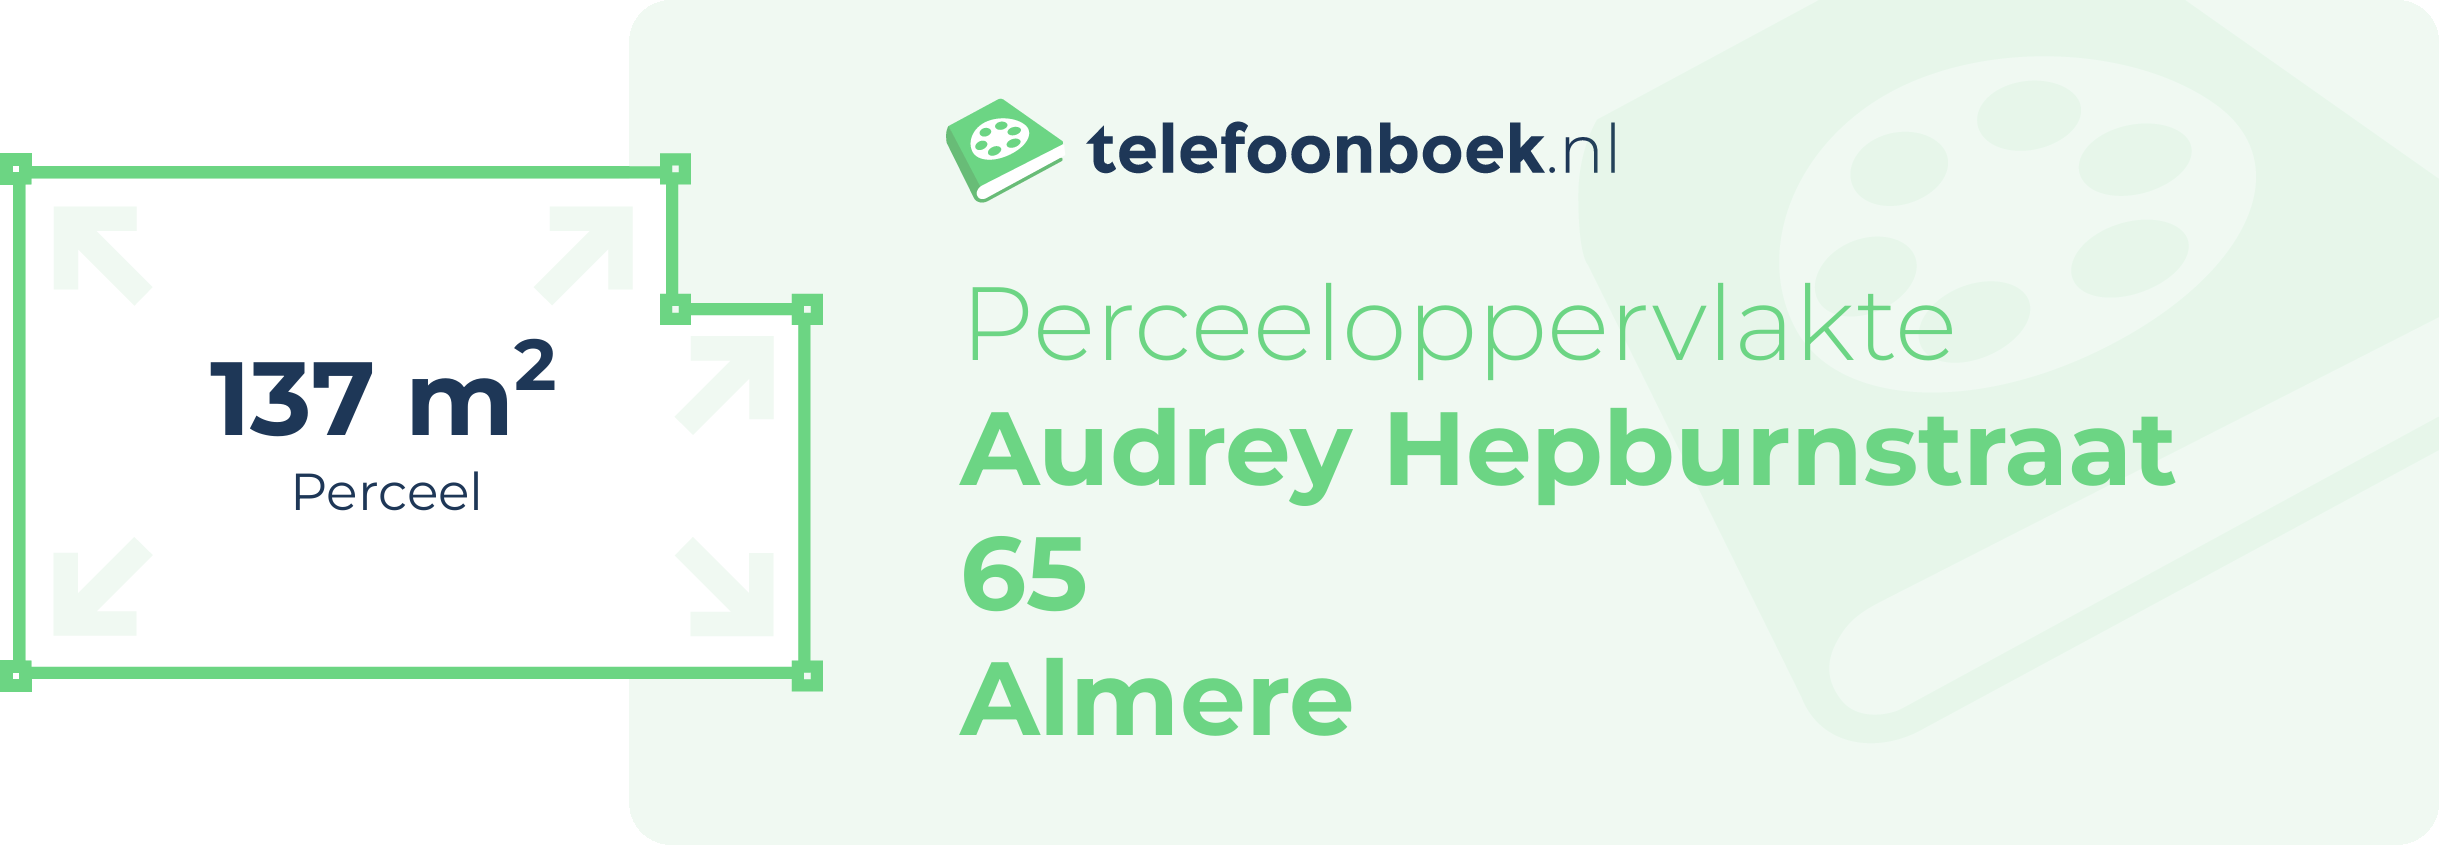 Perceeloppervlakte Audrey Hepburnstraat 65 Almere